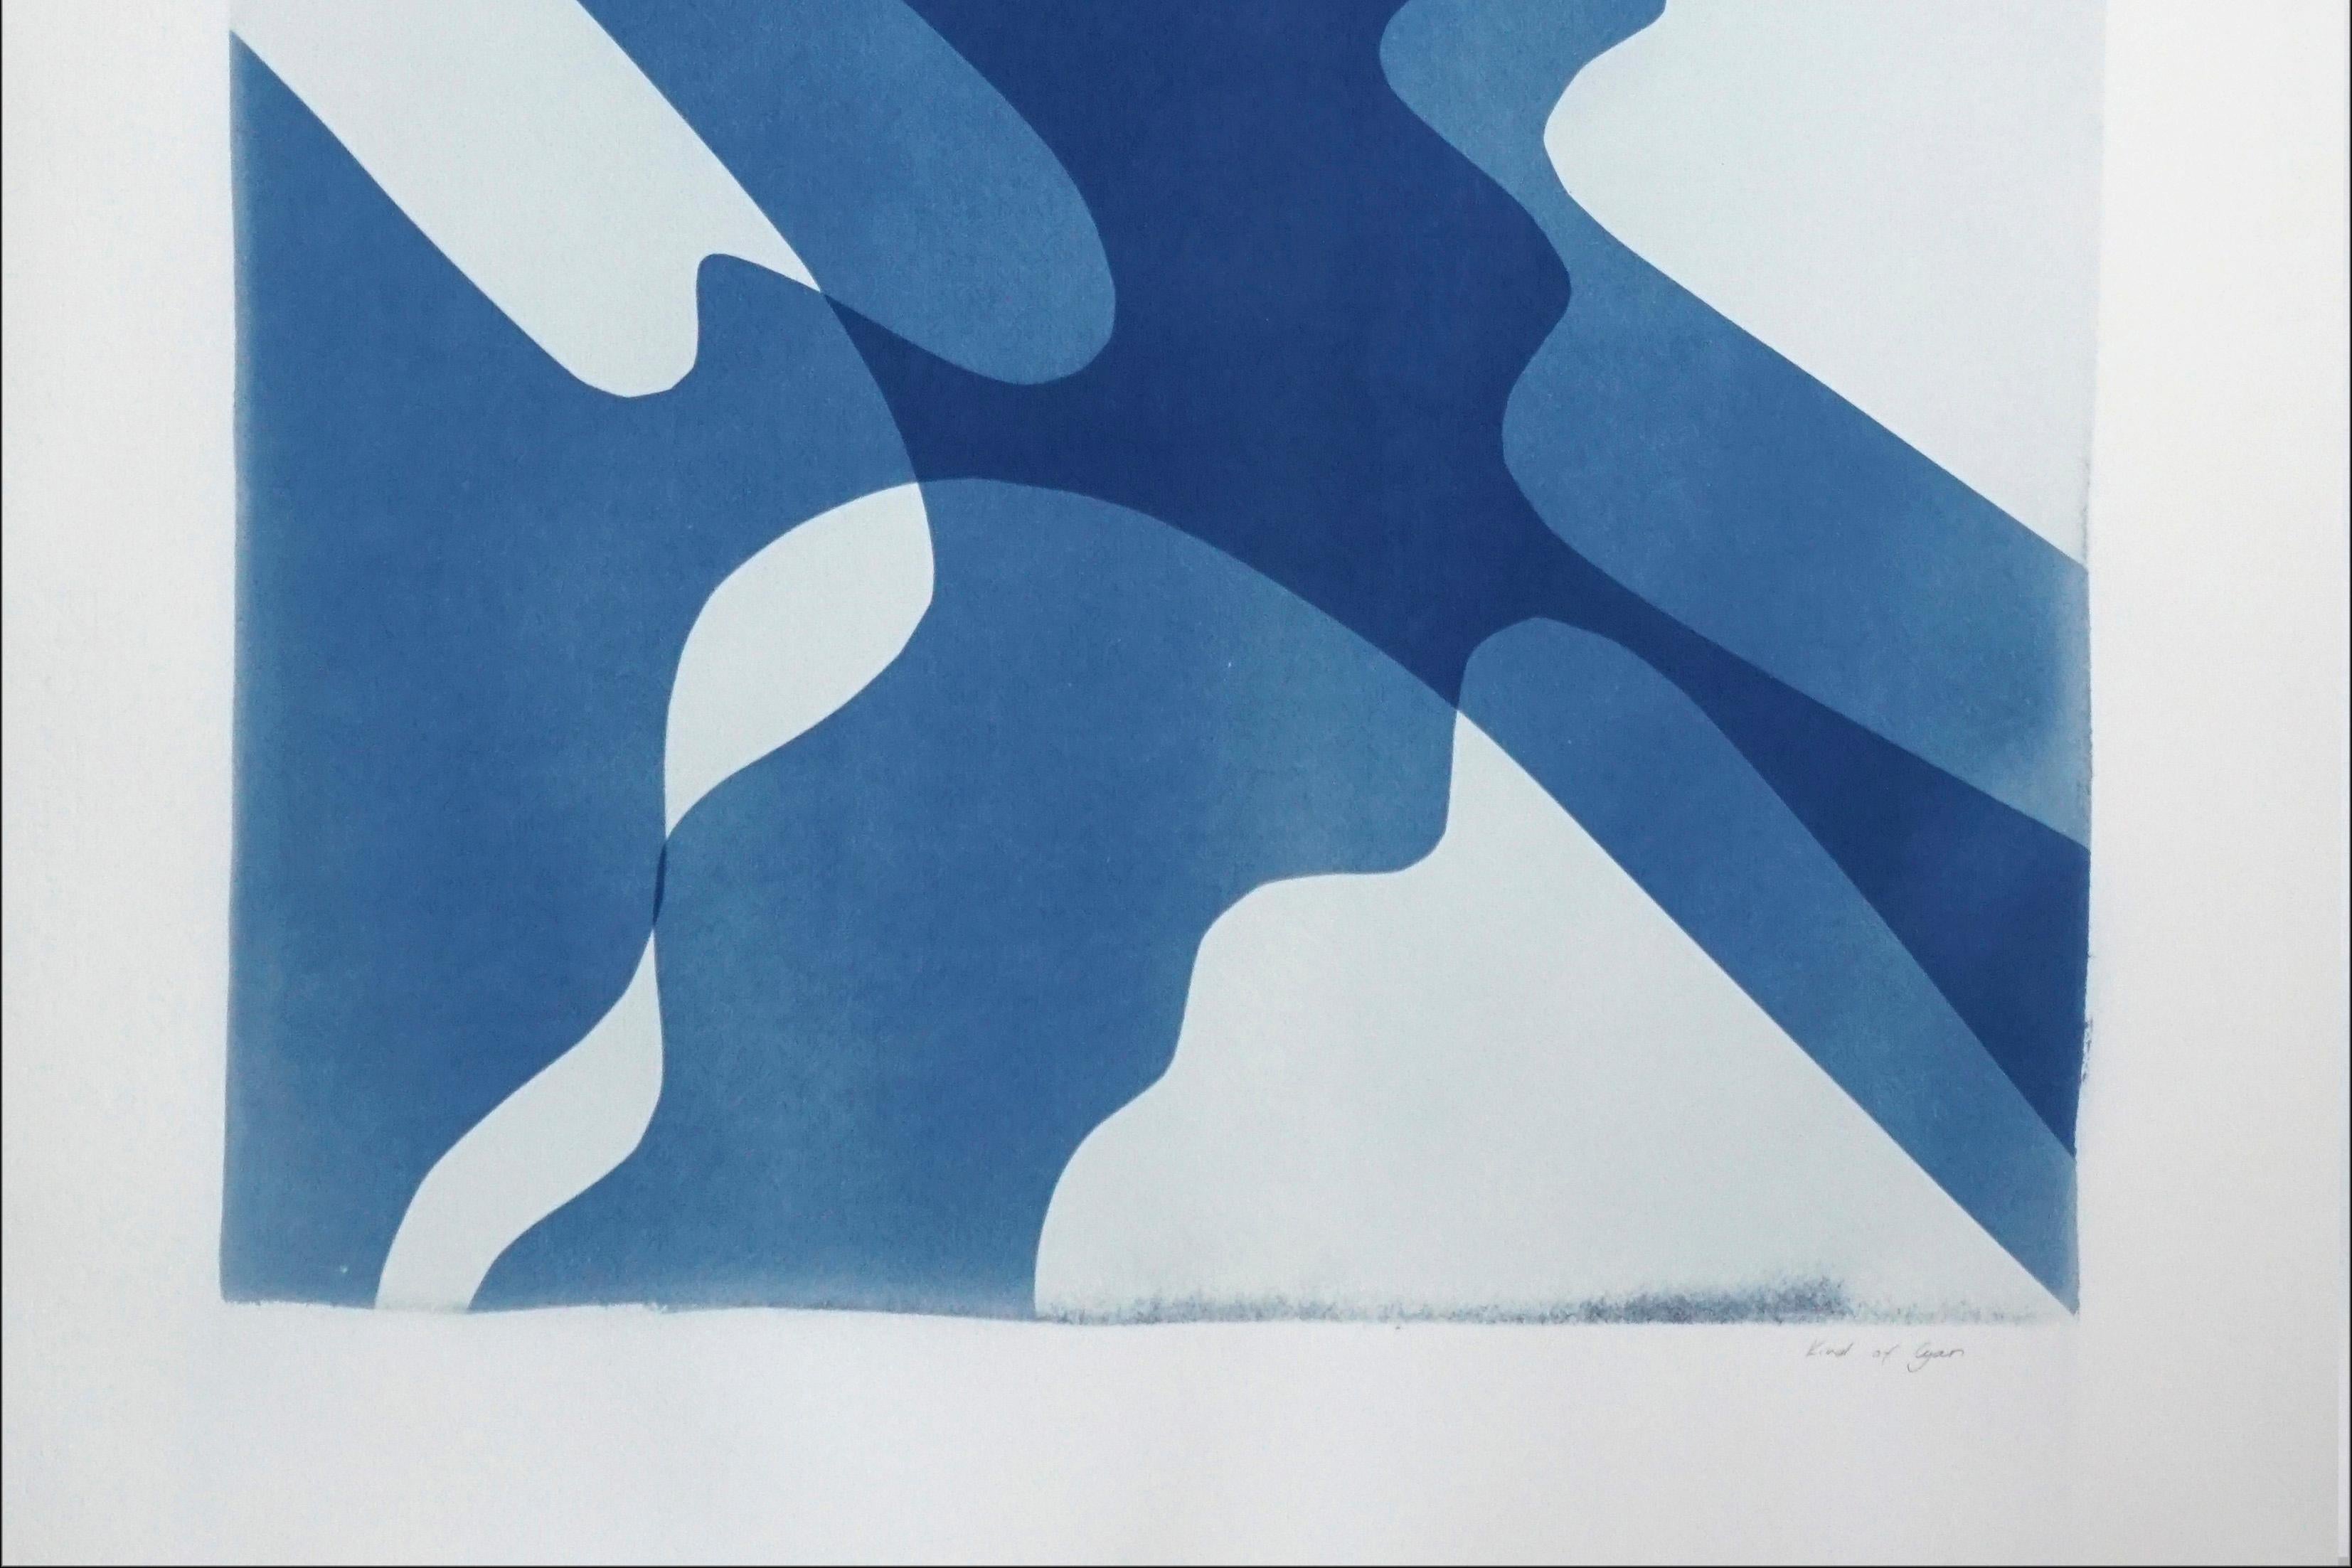 Shaky Shadows, handgefertigte Monotypie minimalistischer abstrakter Formen und Lagen in Blau (Minimalistisch), Print, von Kind of Cyan